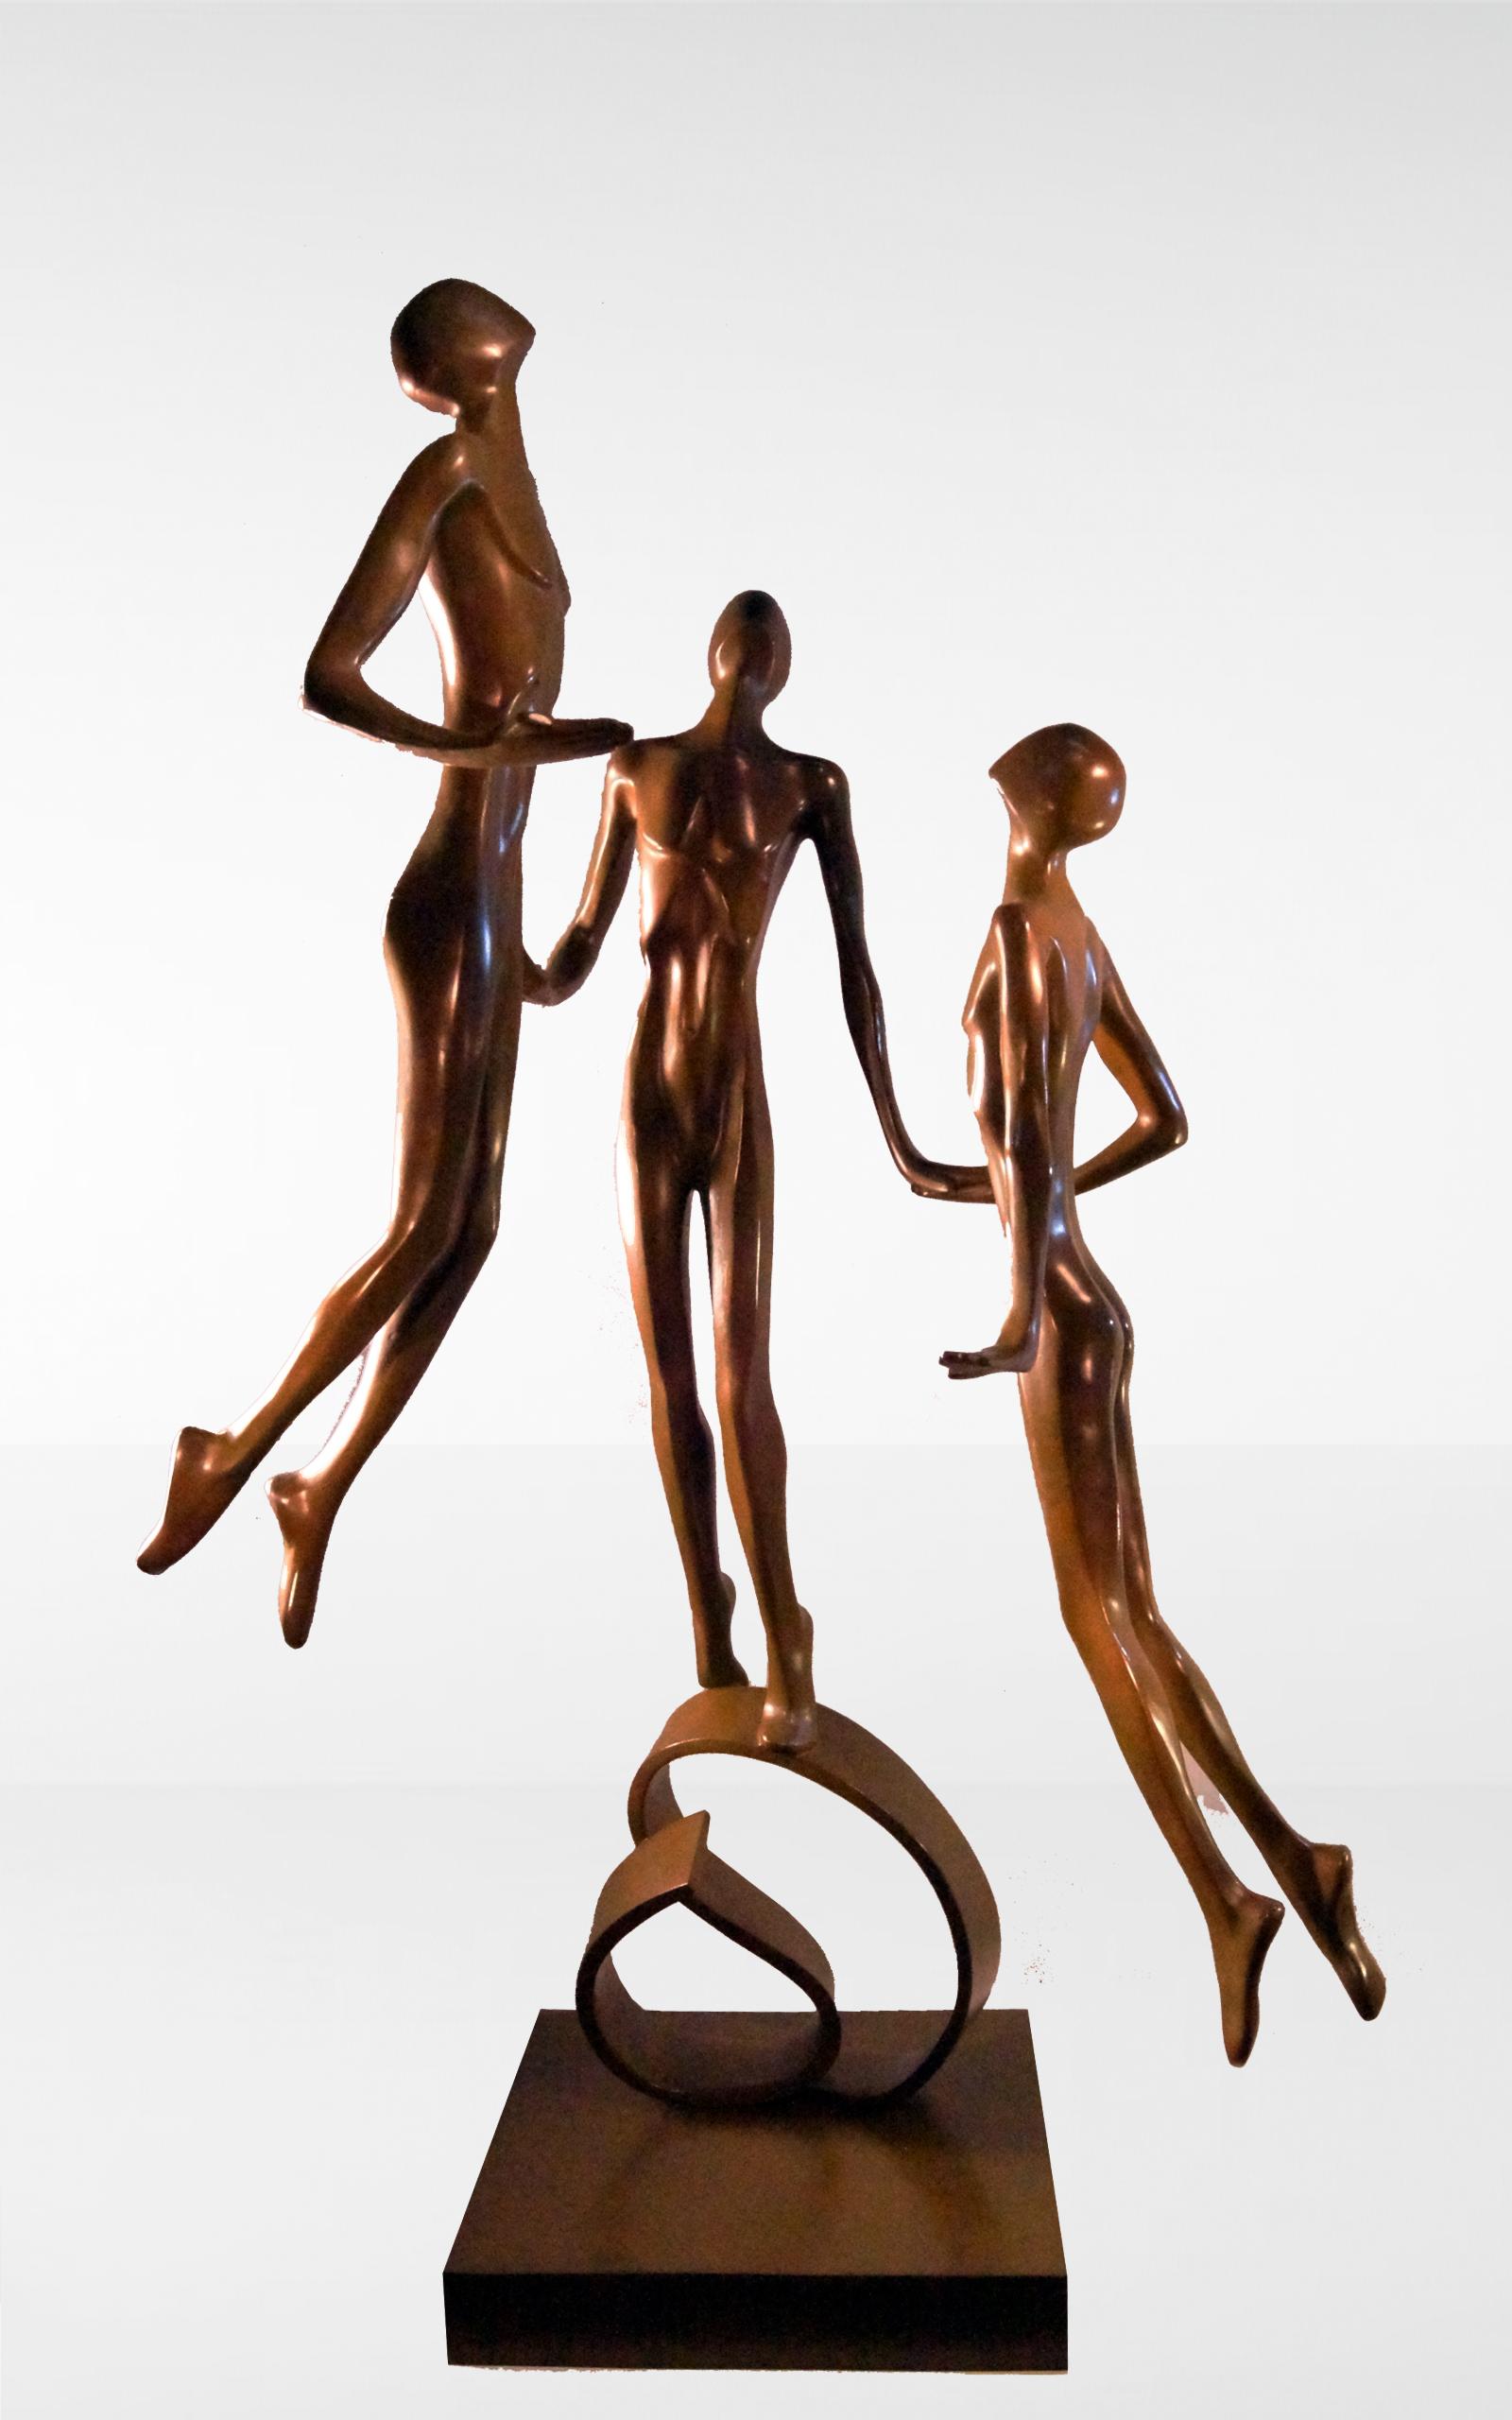 RETORNO, bronze a la cera perdida, 73 cm x 67 cm x 122 cm